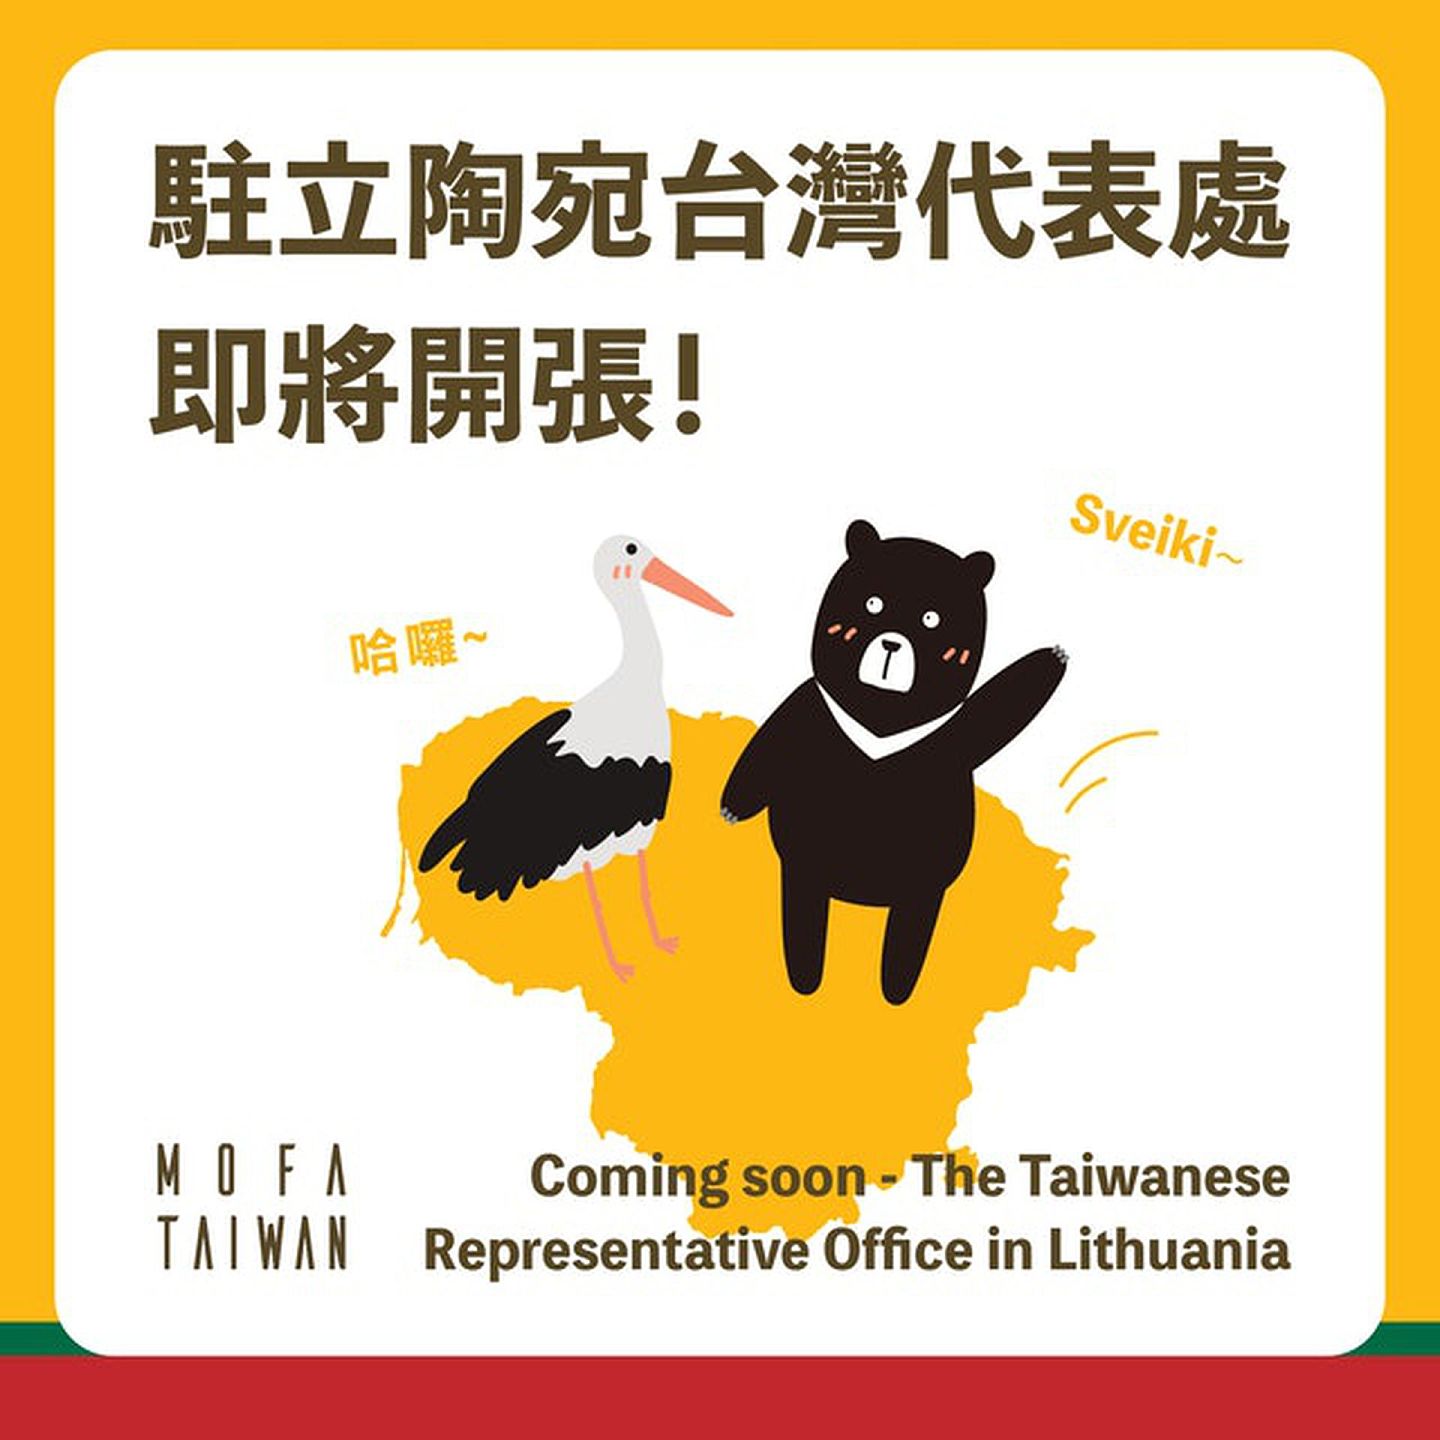 2021年7月20日，台湾方面表示，将在立陶宛设立“驻立陶宛台湾代表处”。（Facebook＠MOFA）